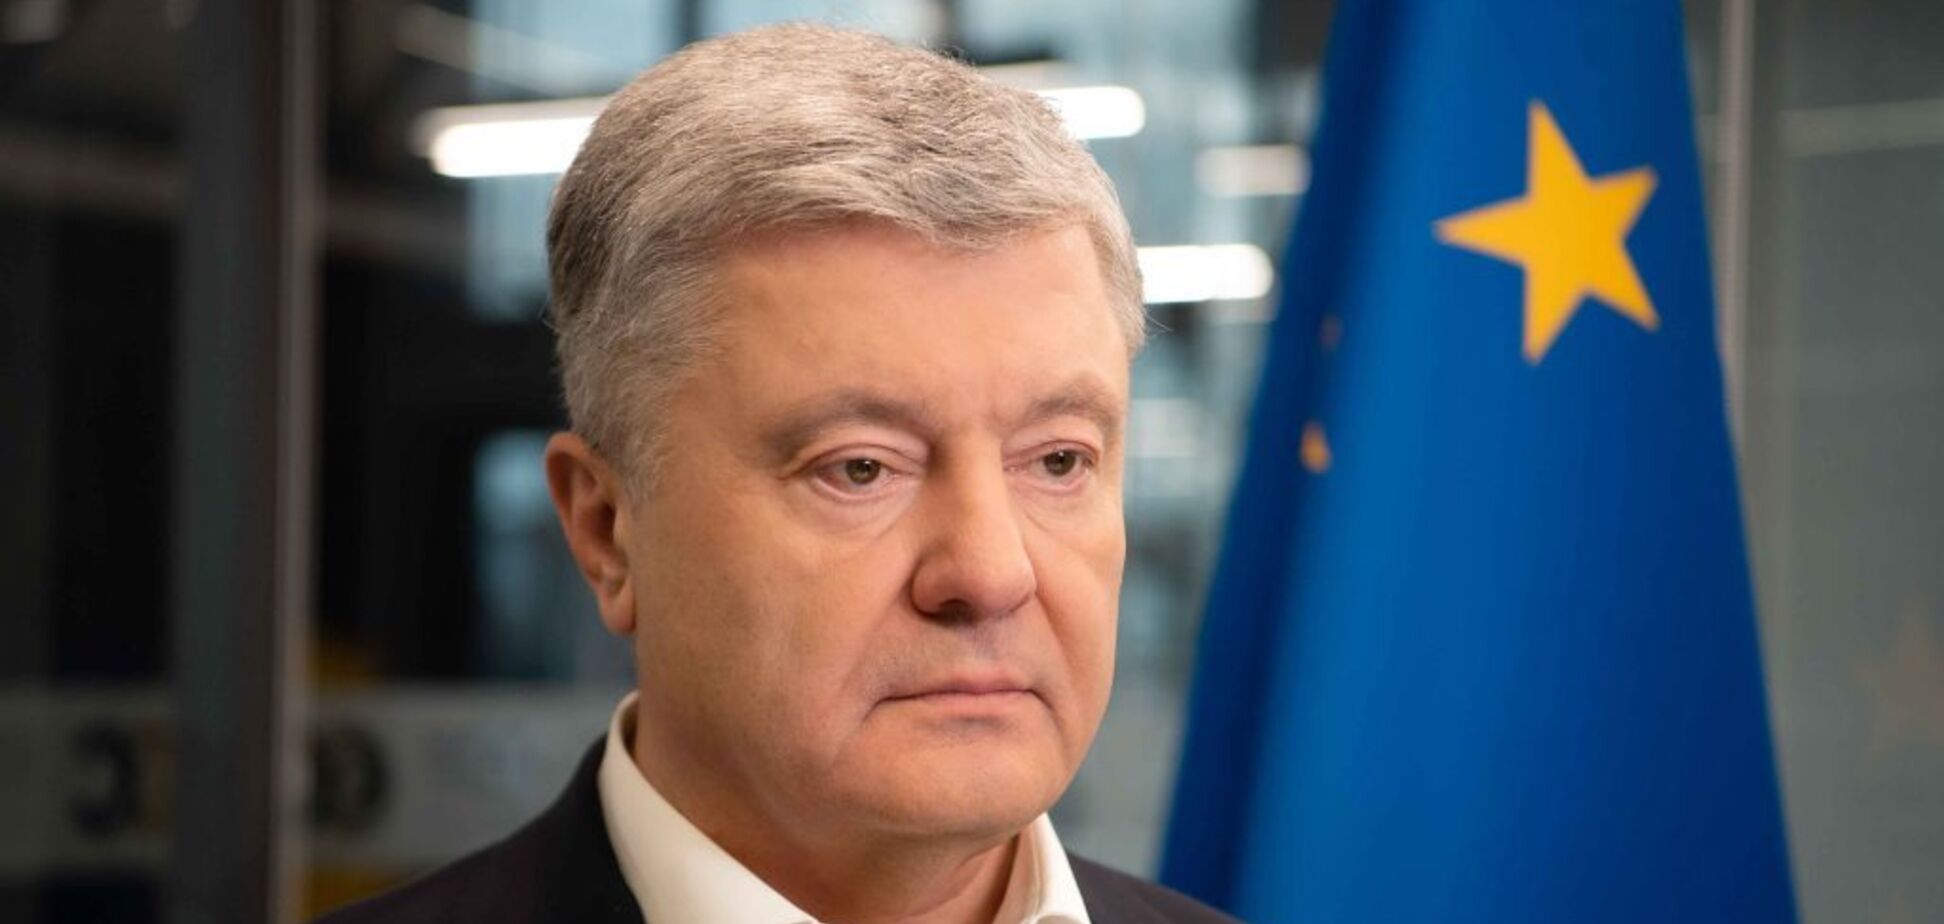 Порошенко на Европейском экономическом конгрессе обсудит финансовую поддержку и восстановление Украины